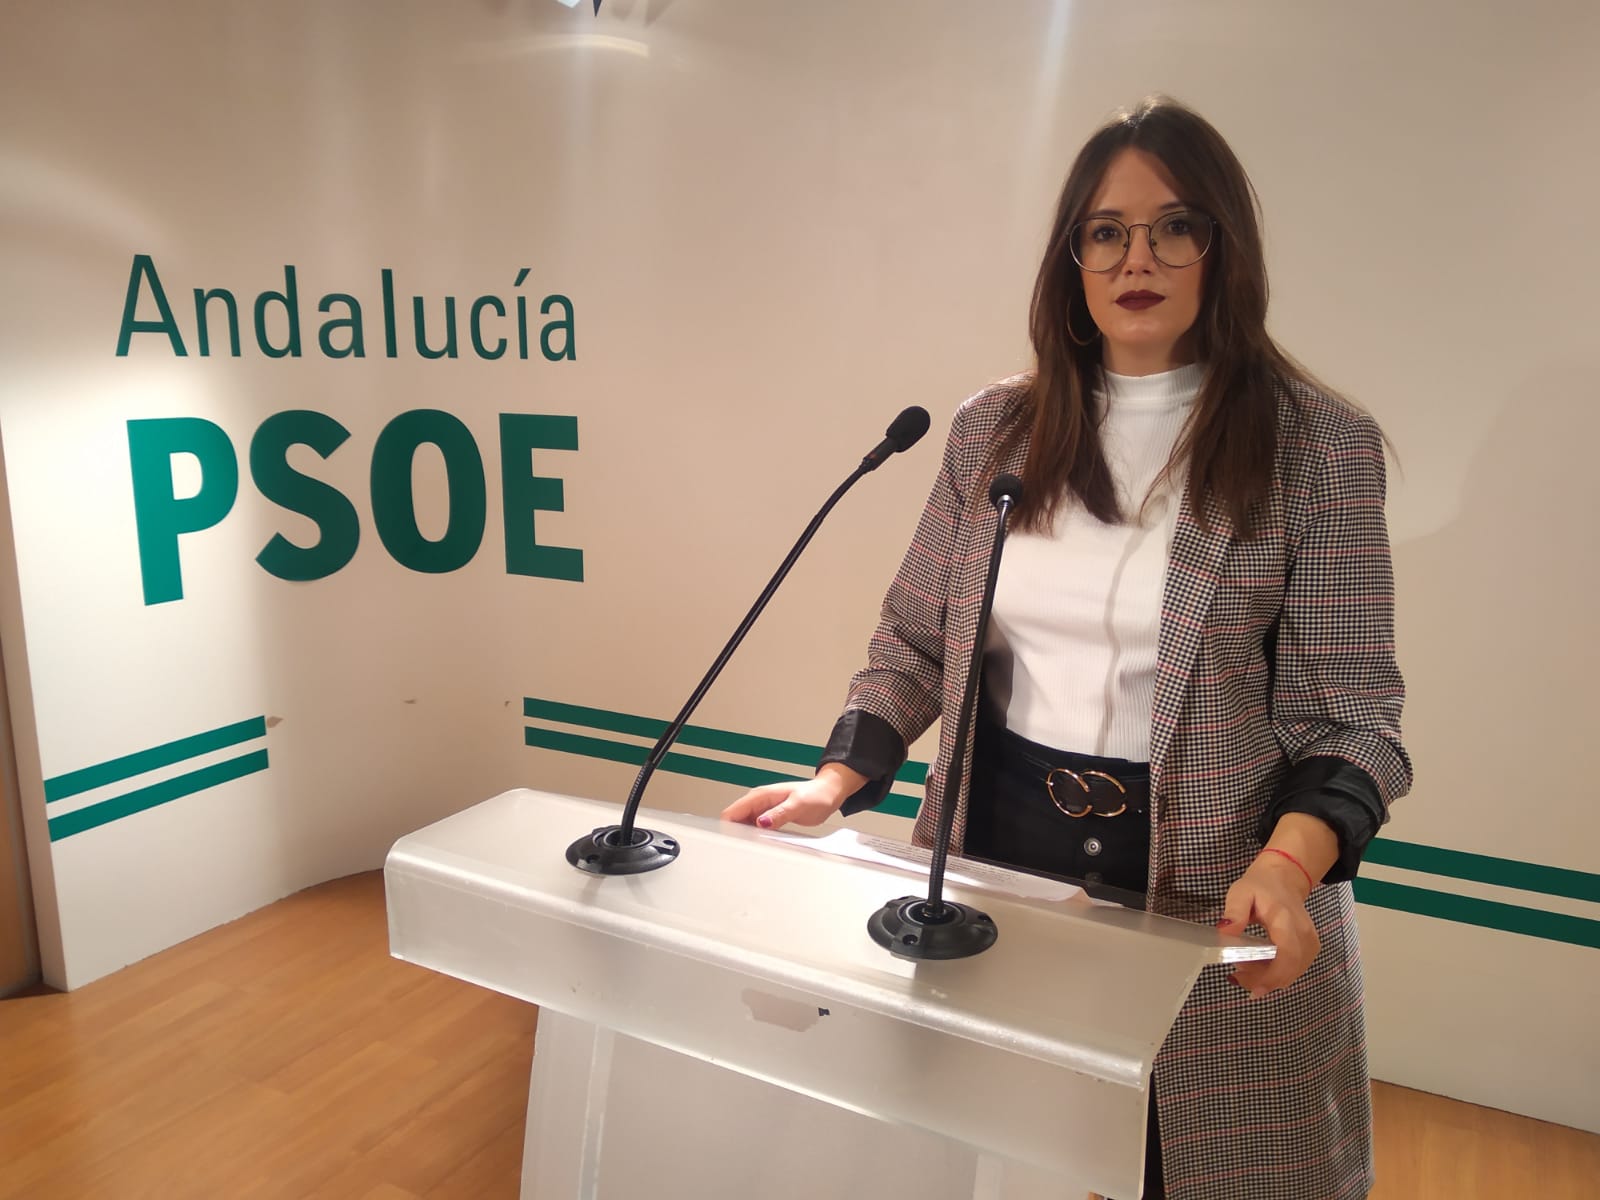 El PSOE exige al consejero Imbroda que “descarte por completo” la reorganización de centros en la provincia